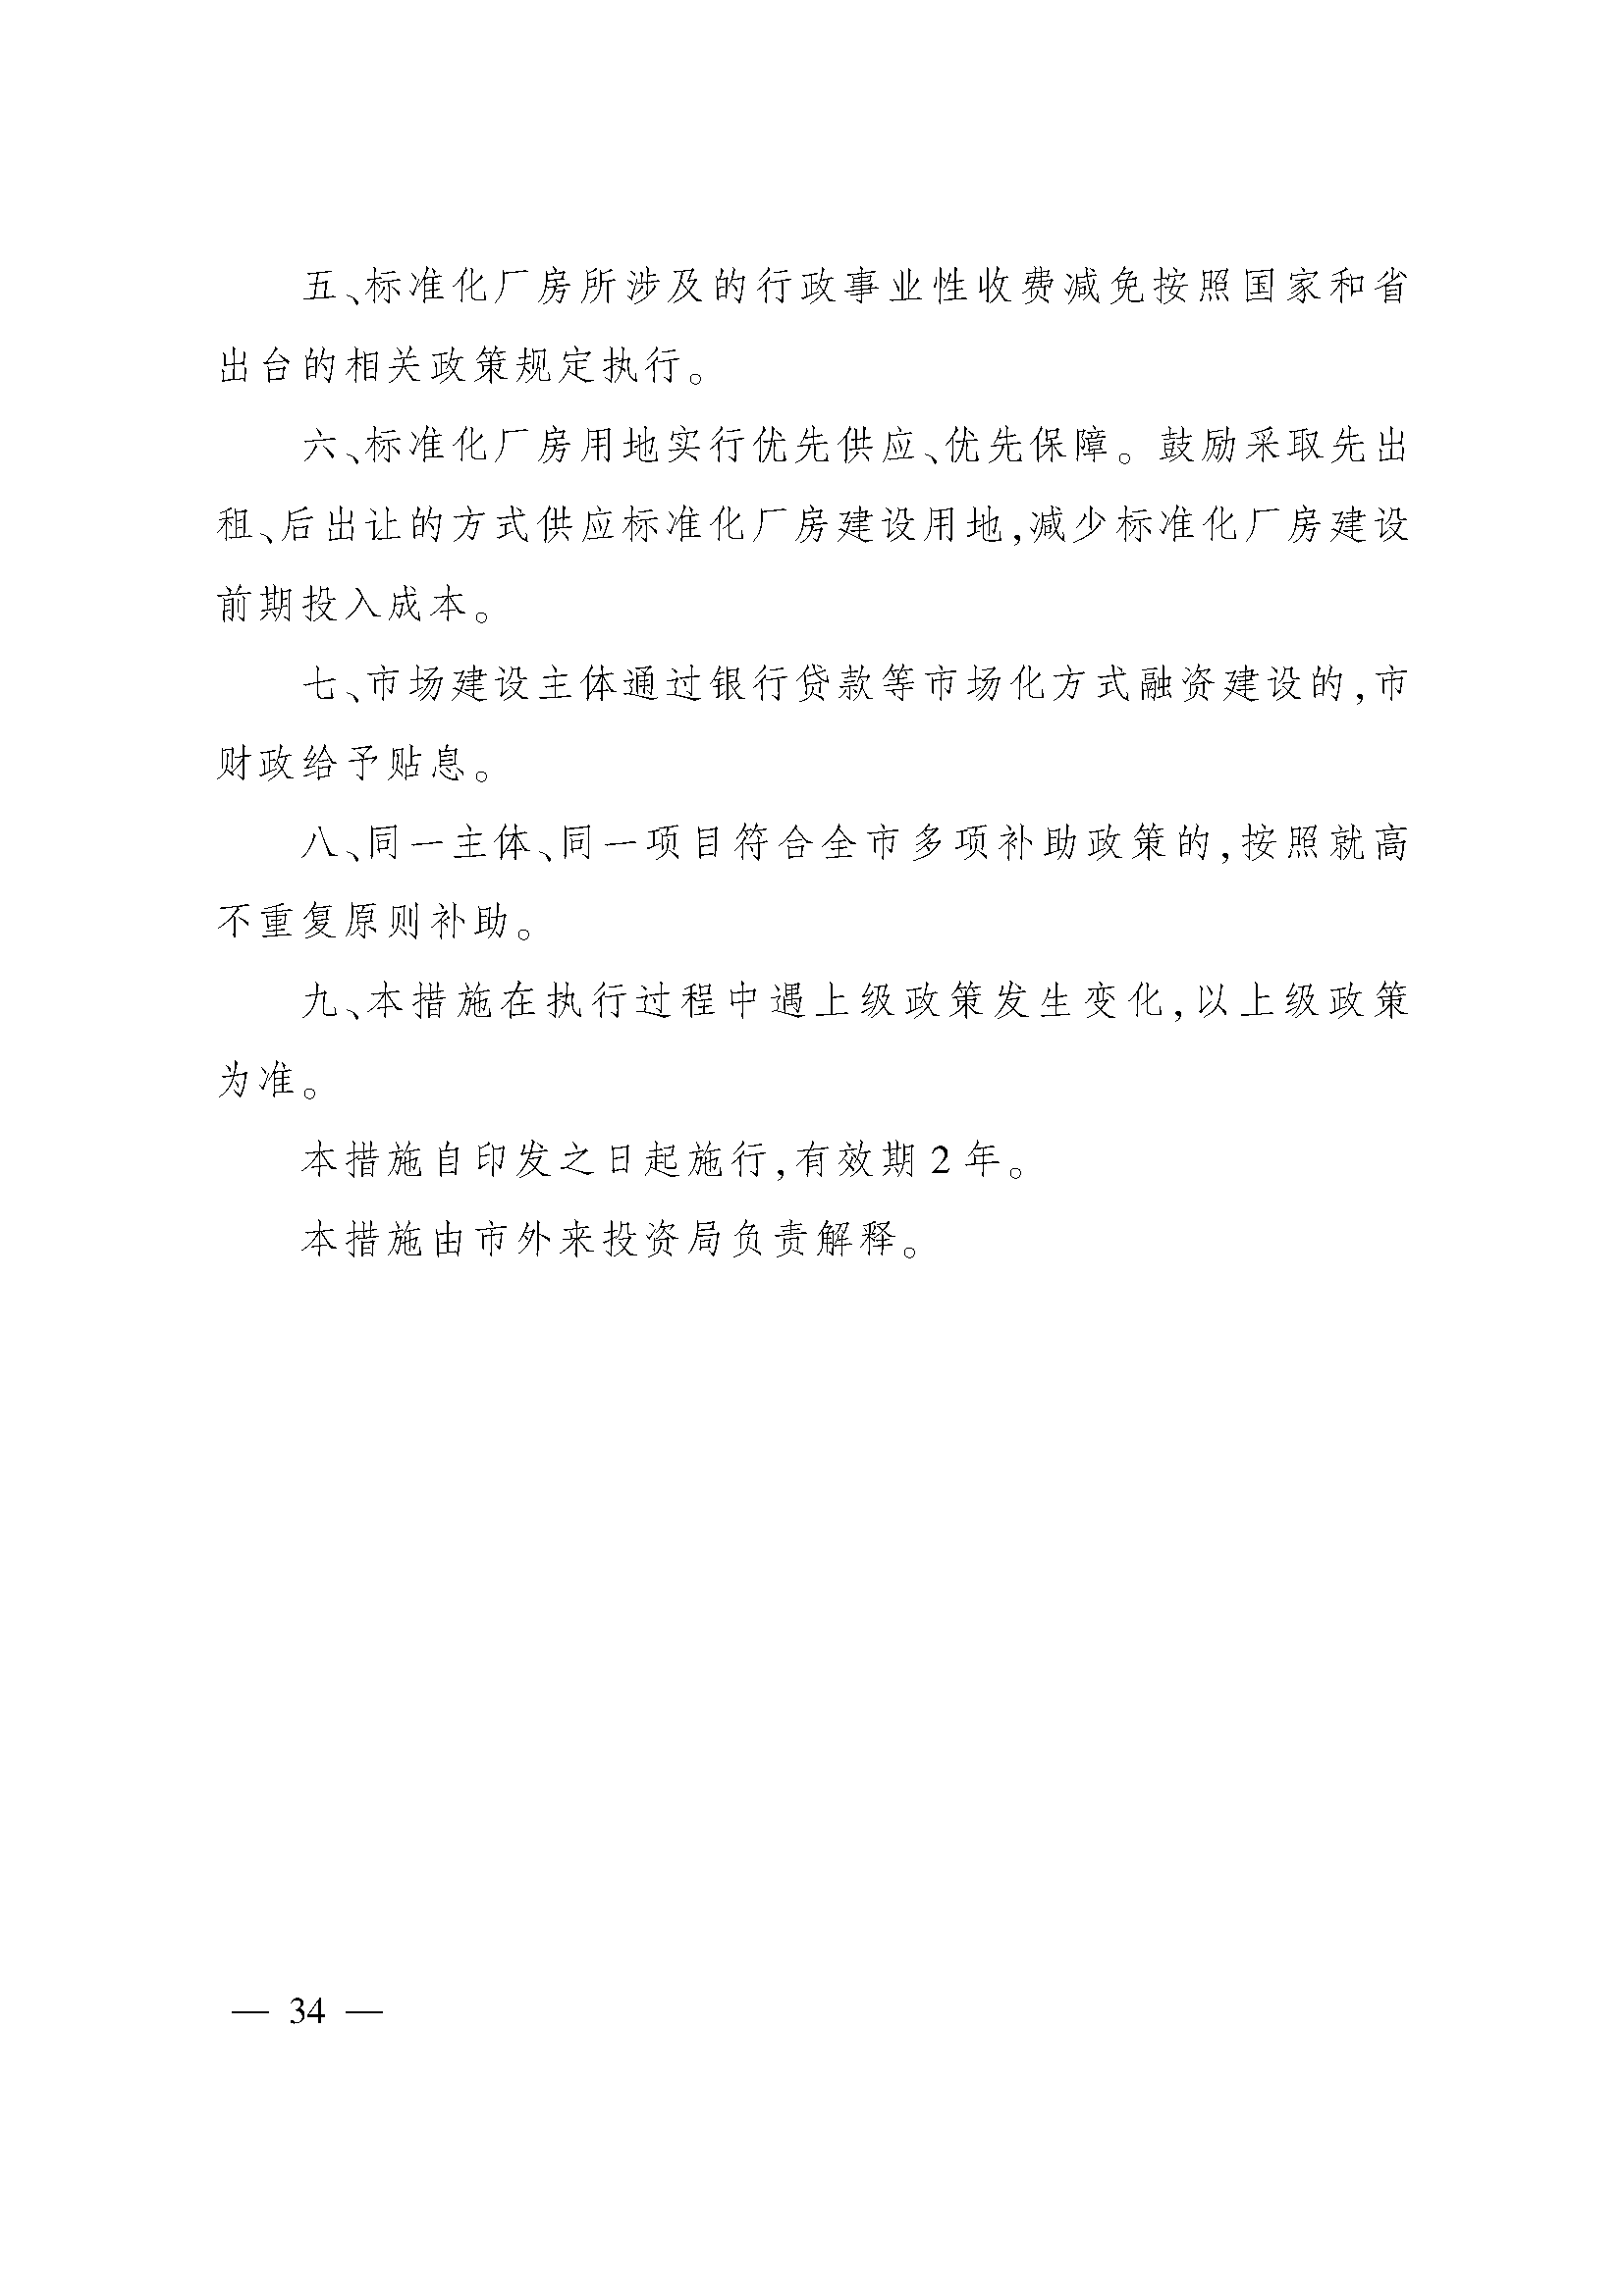 太原市人民政府办公室关于印发太原市招商引资若干措施的通知(图34)